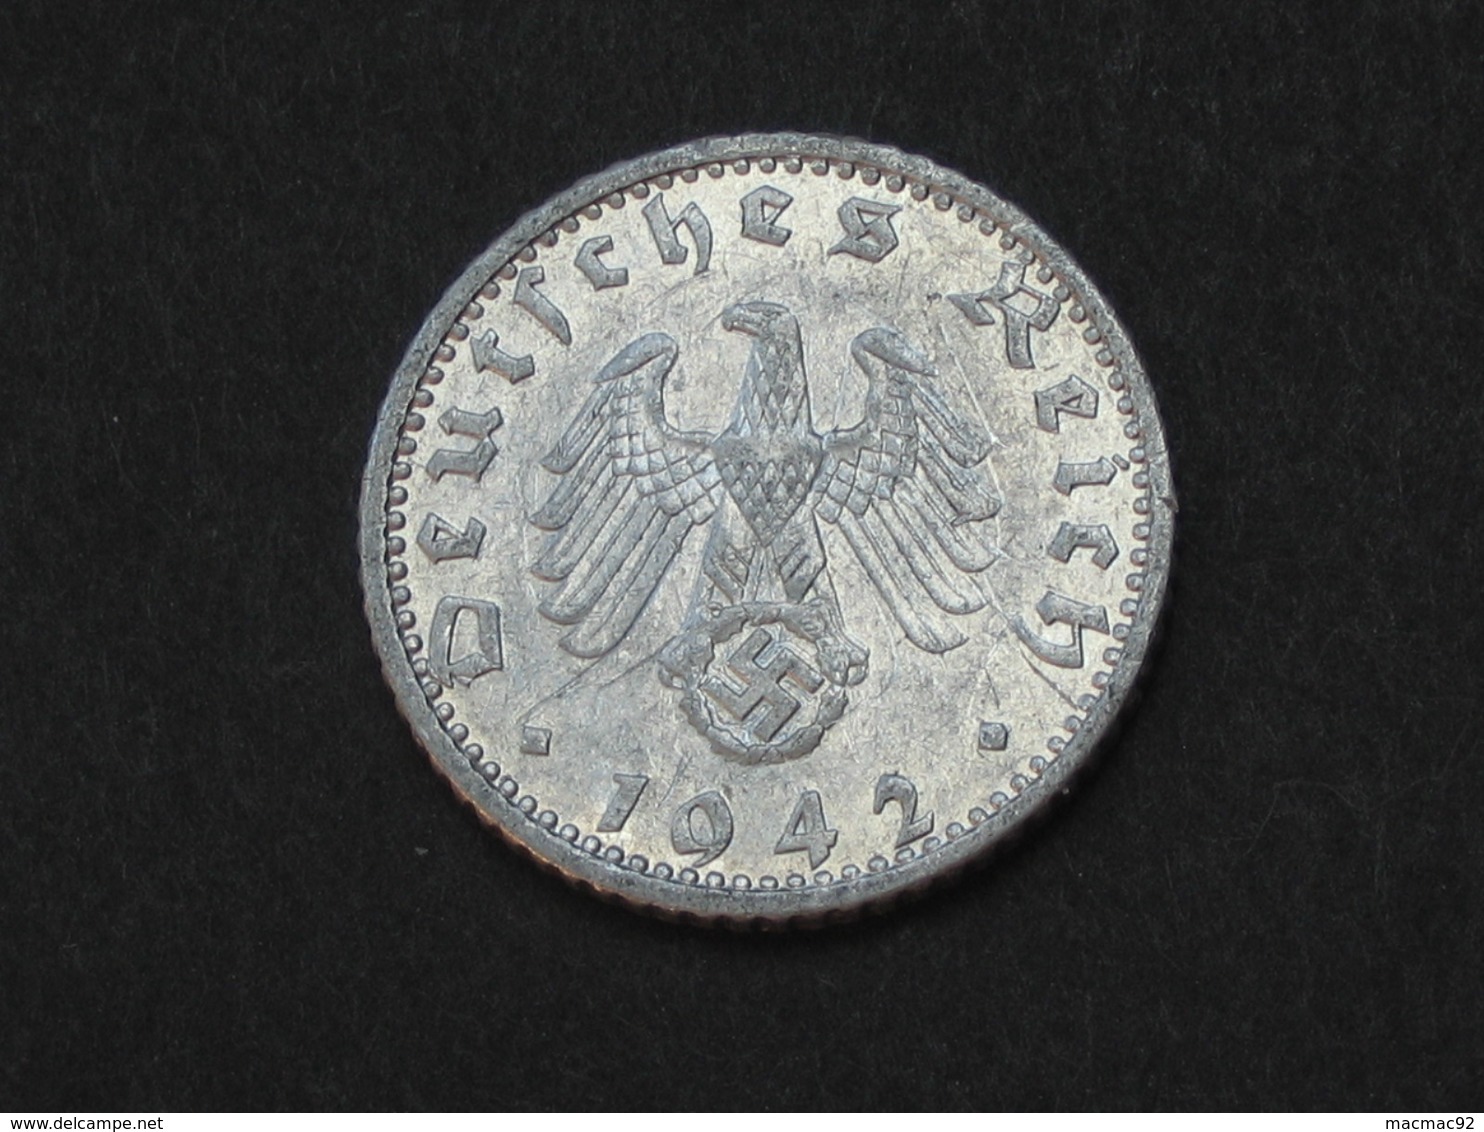 50 Reichspfennig 1942 A - Germany- Allemagne 3 Eme Reich   **** EN ACHAT IMMEDIAT **** - 50 Reichspfennig